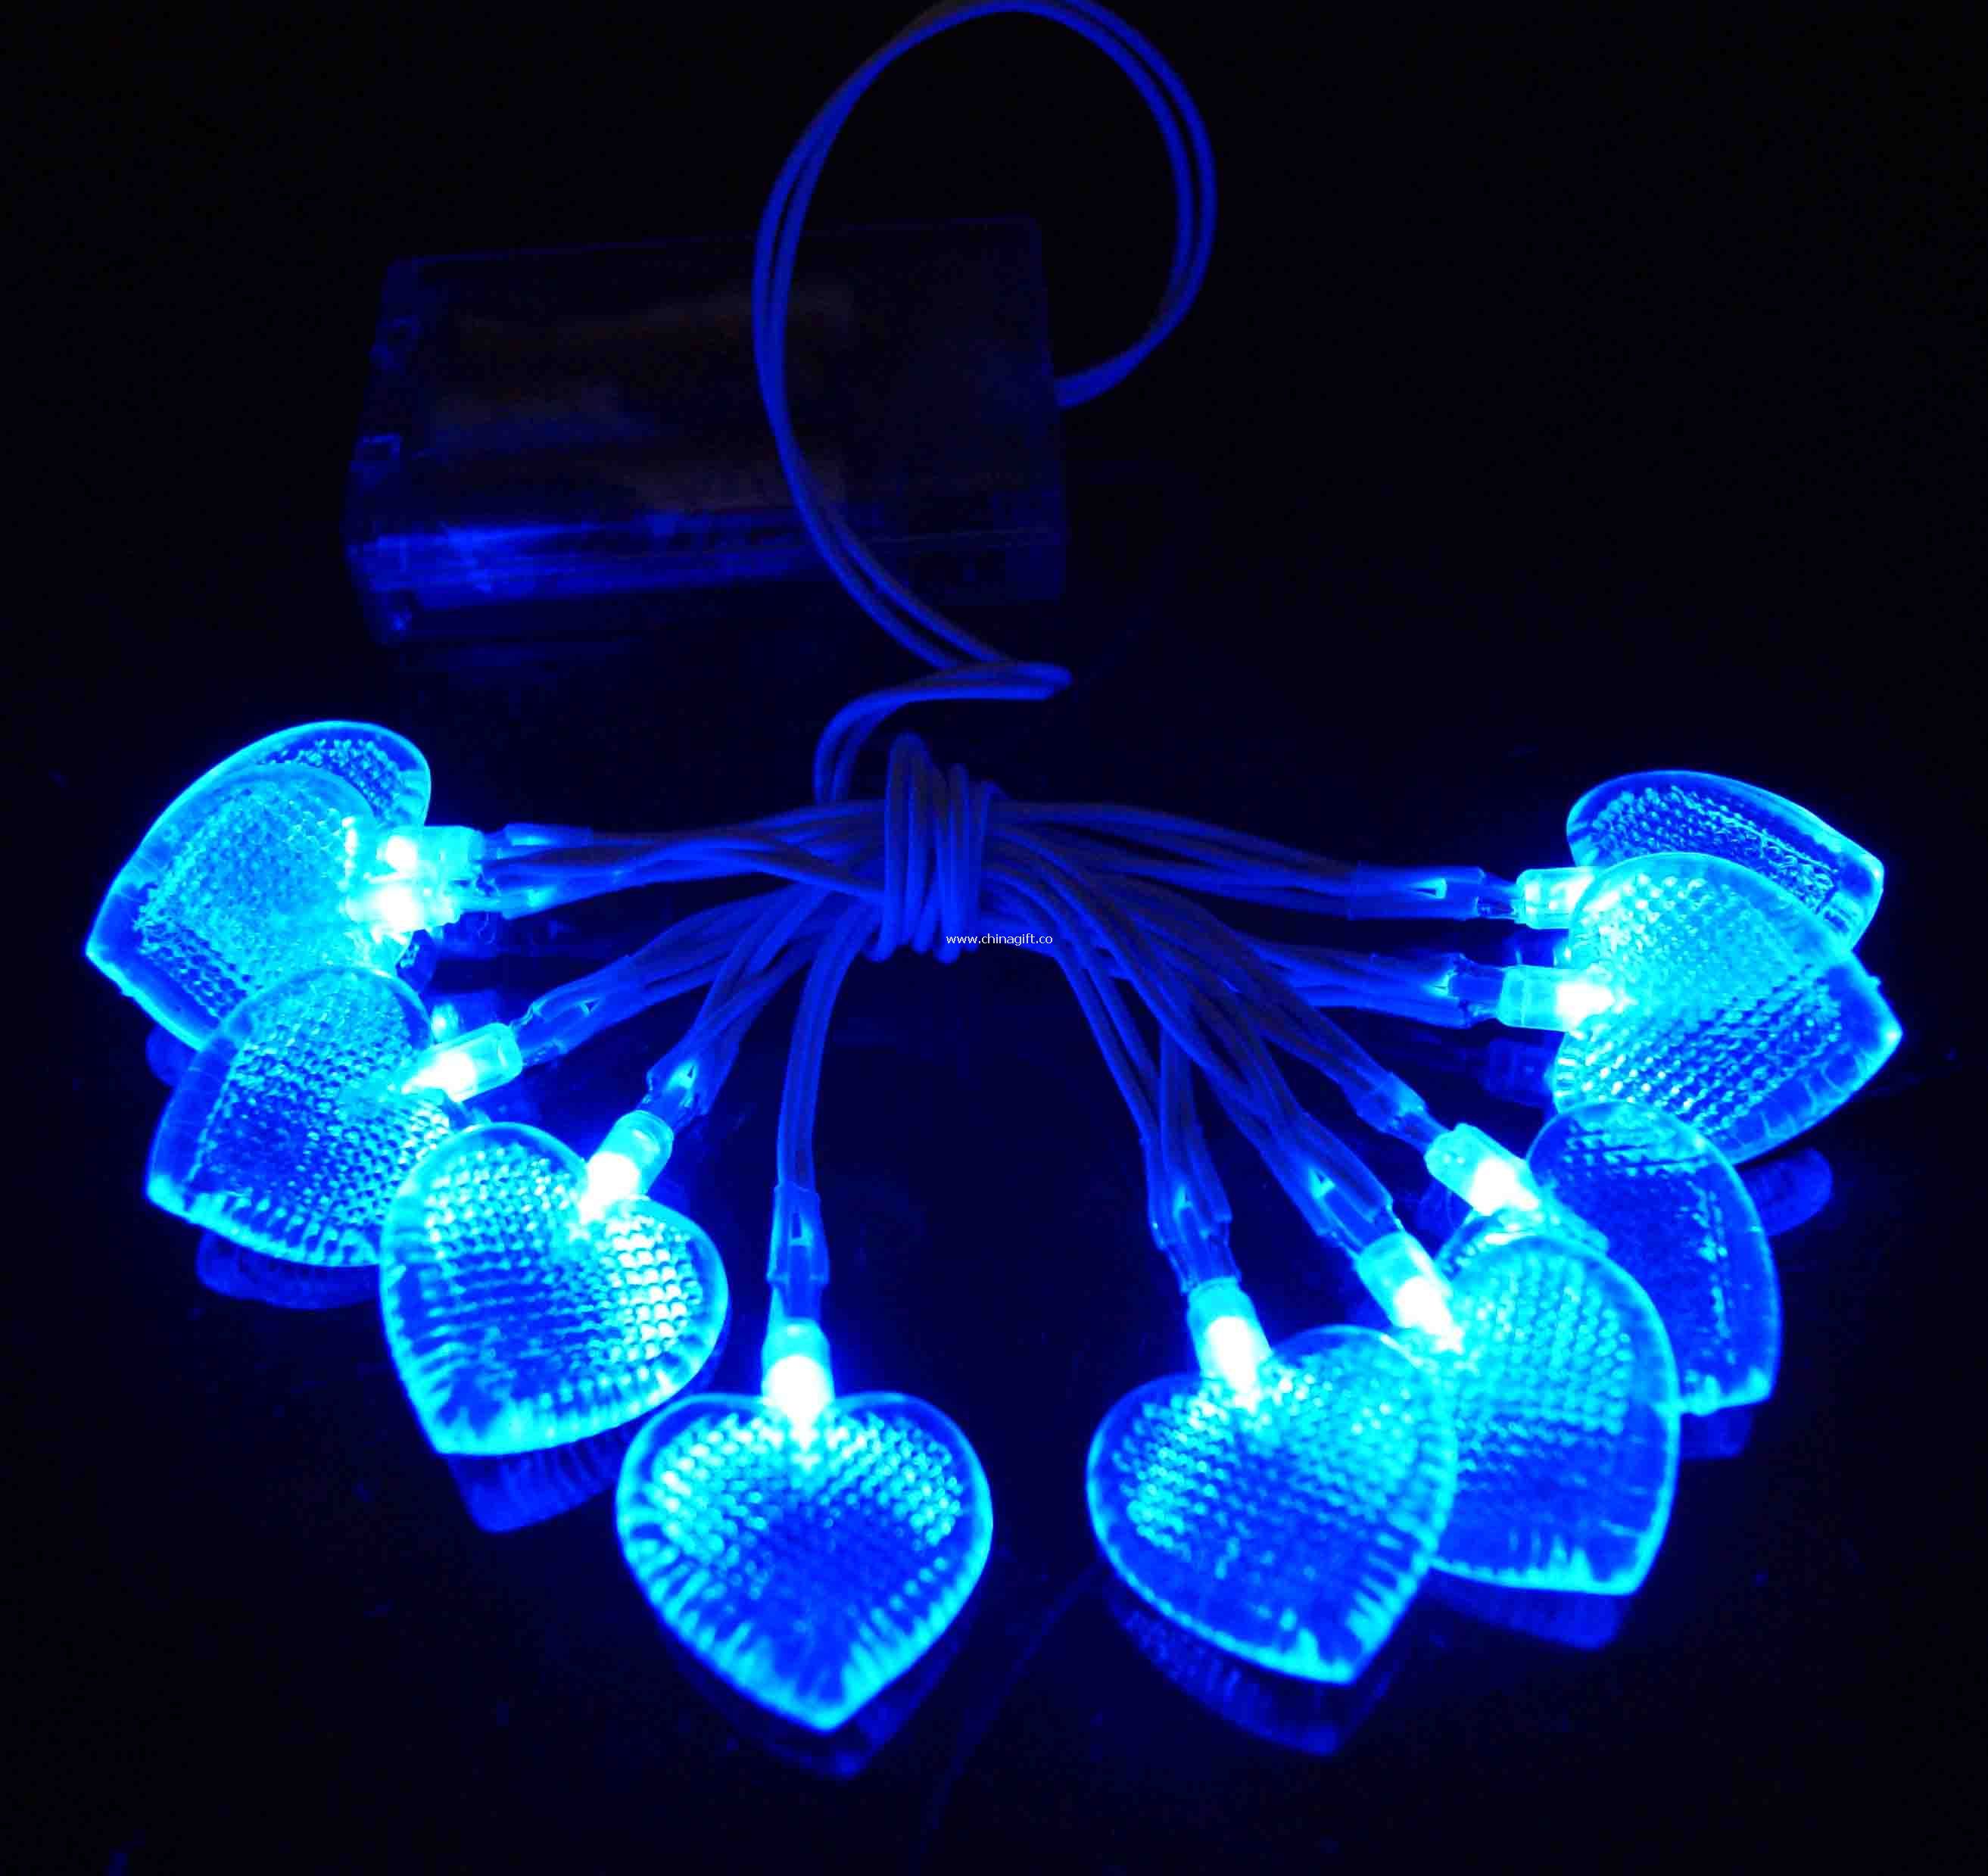 LED heart chain light